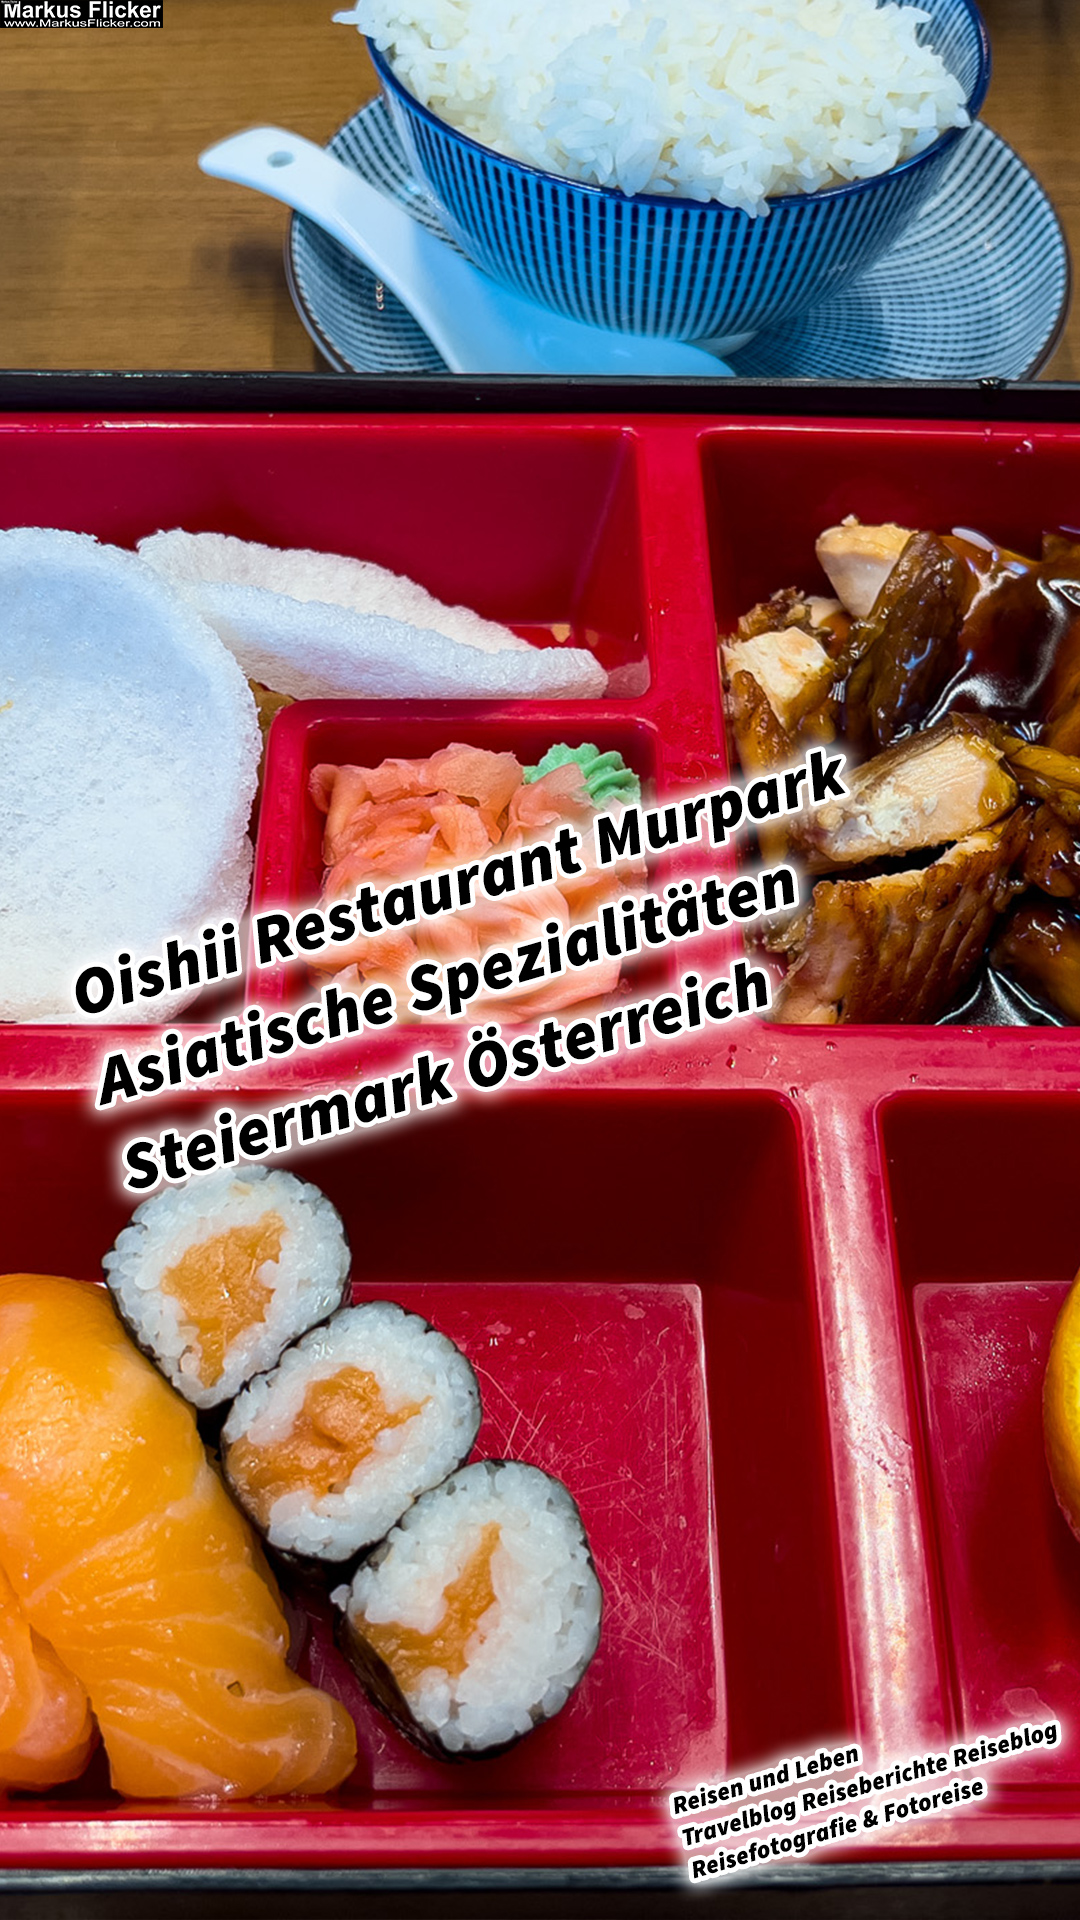 Oishii Restaurant Murpark Graz Asiatische Spezialitäten Steiermark Österreich